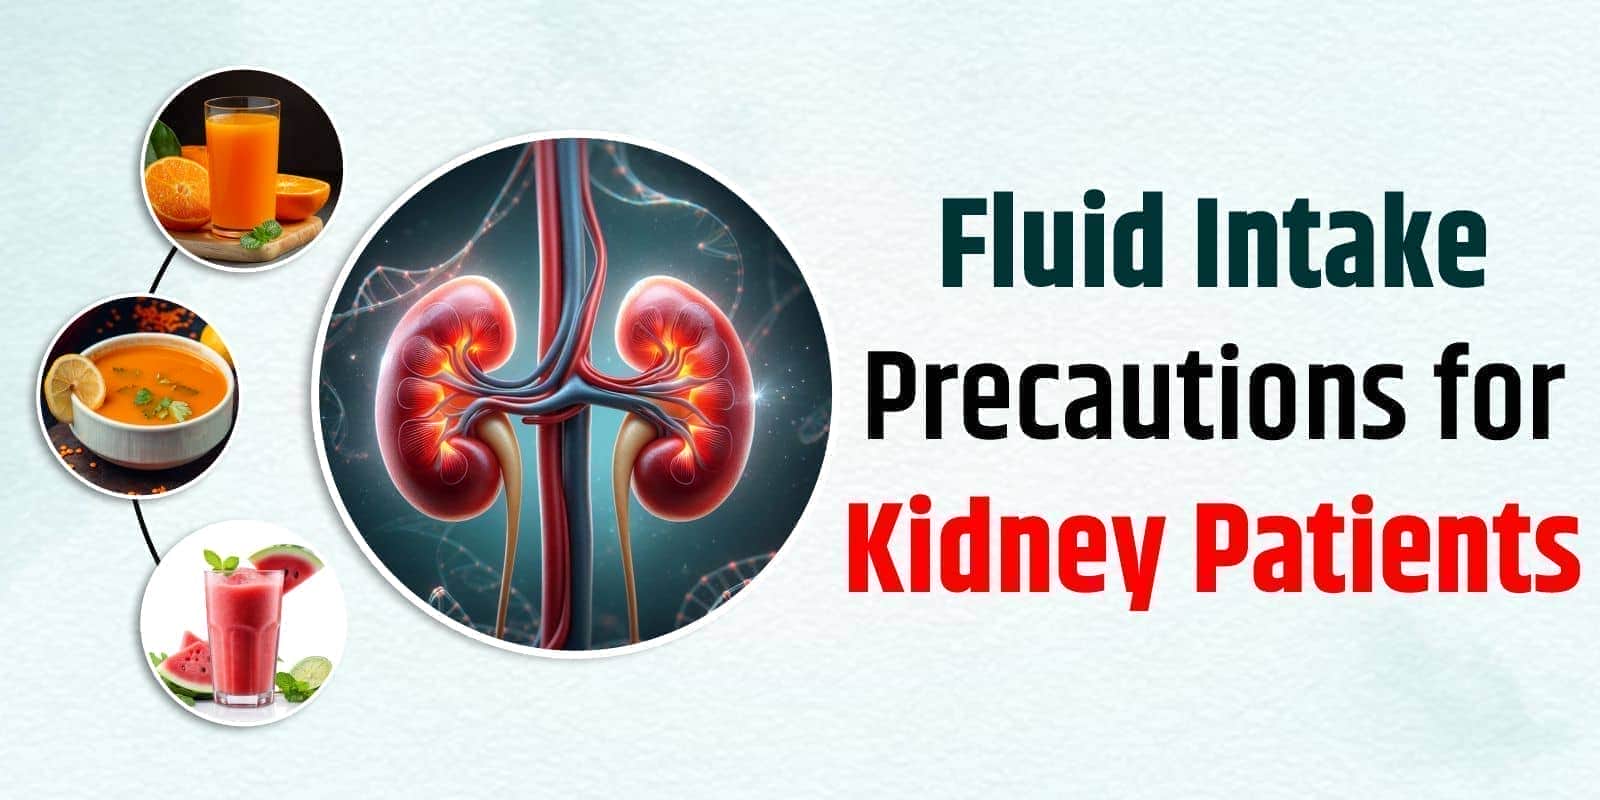 Fluid Intake Precautions for Kidney Patients